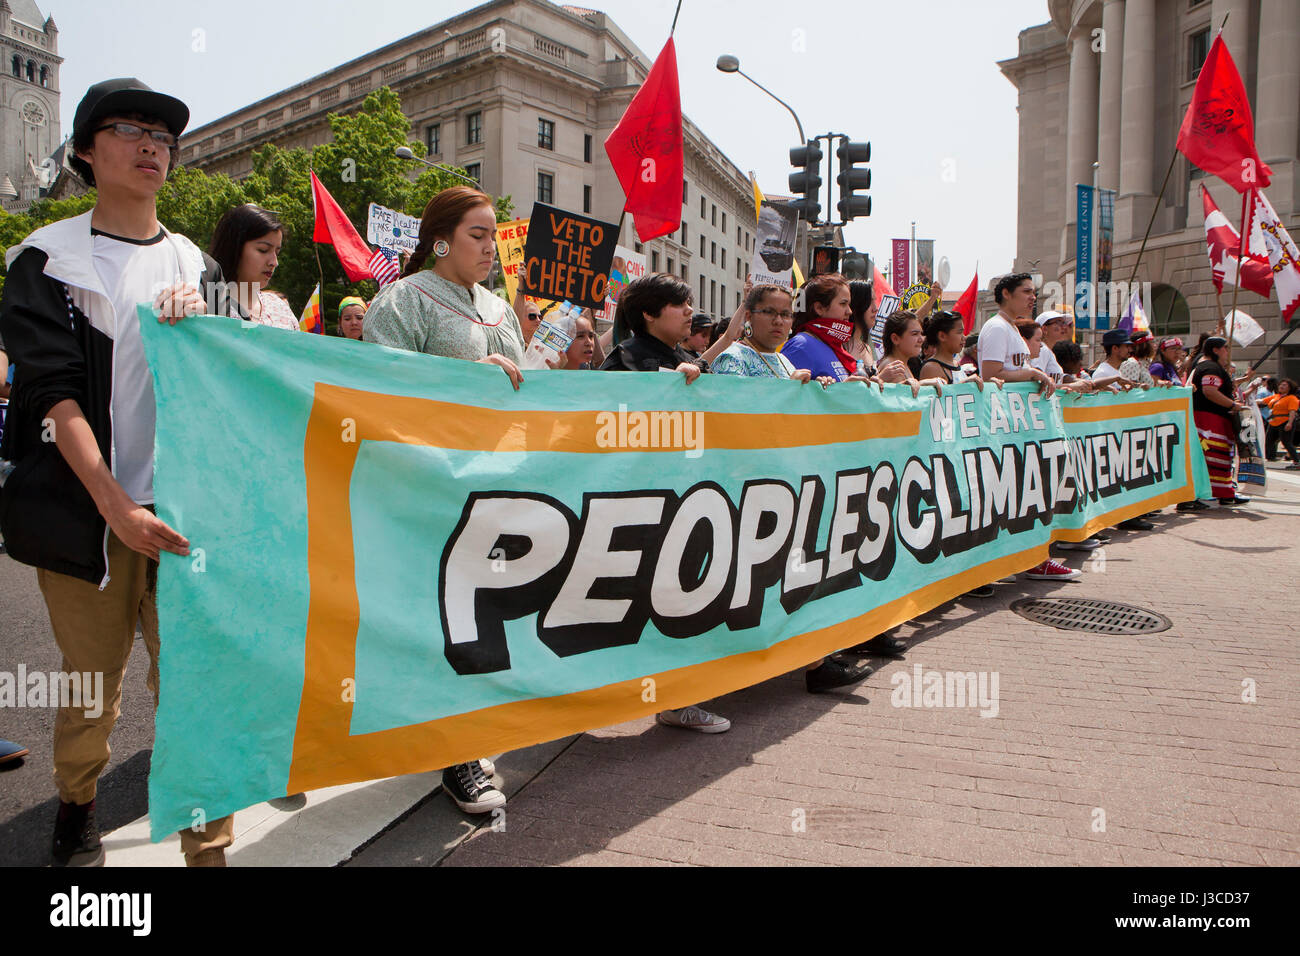 Le climat de 2017 personnes (manifestants Mars marchant avec mouvement climatique peuples bannière) - Washington, DC USA Banque D'Images